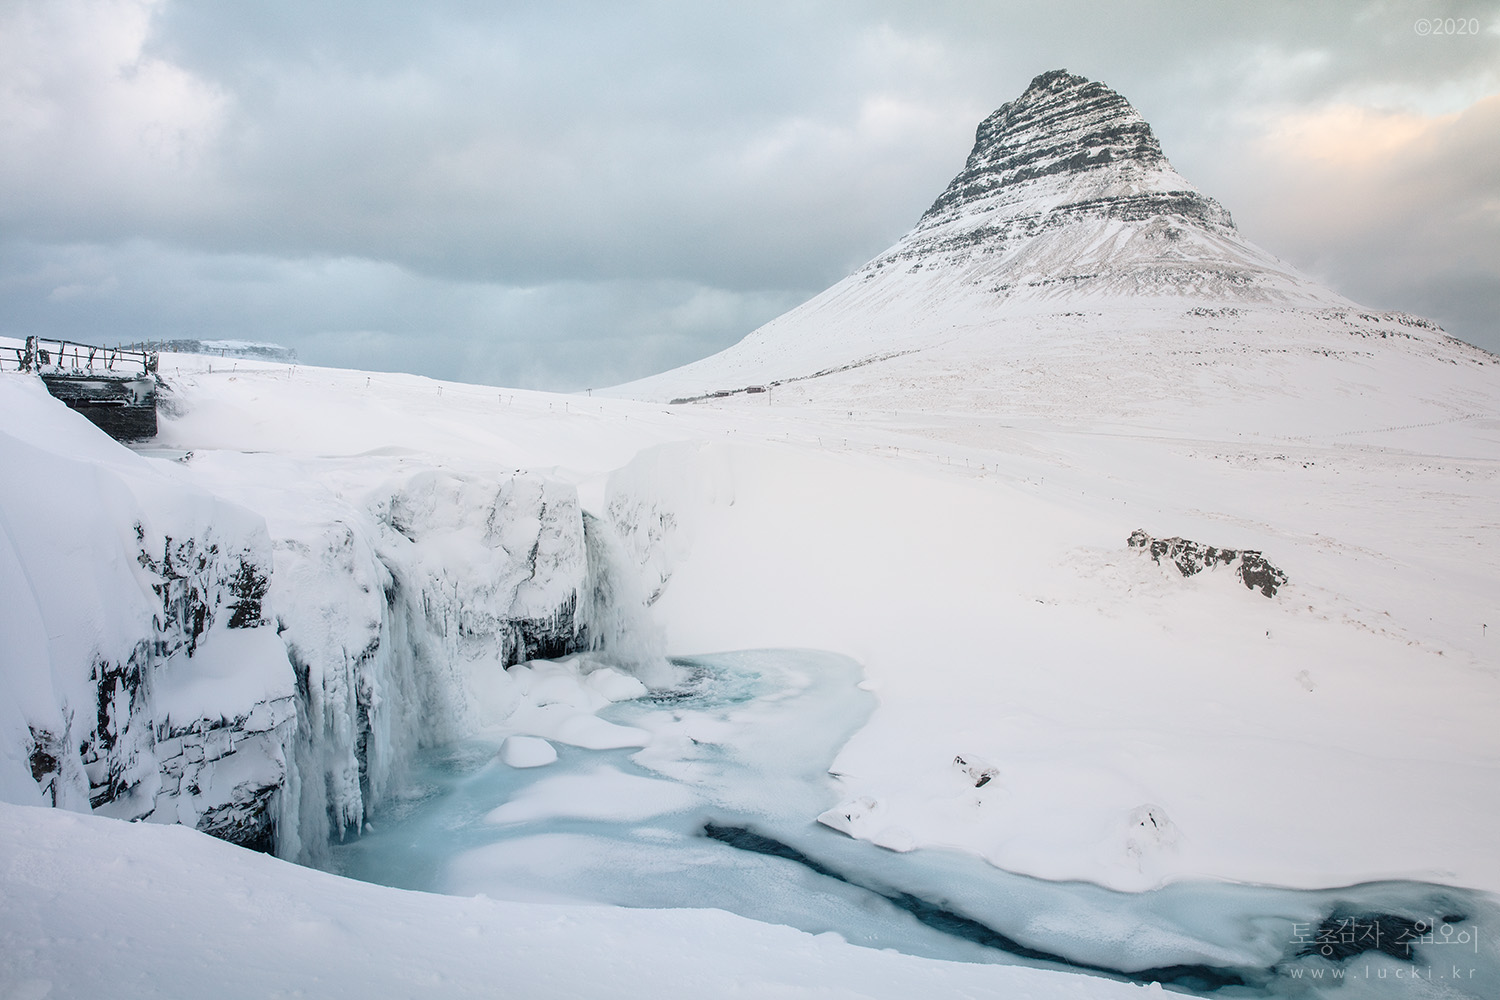 아이슬란드 겨울여행 준비의 모든것! – 렌터카, 짐싸기, 일정짜는 팁